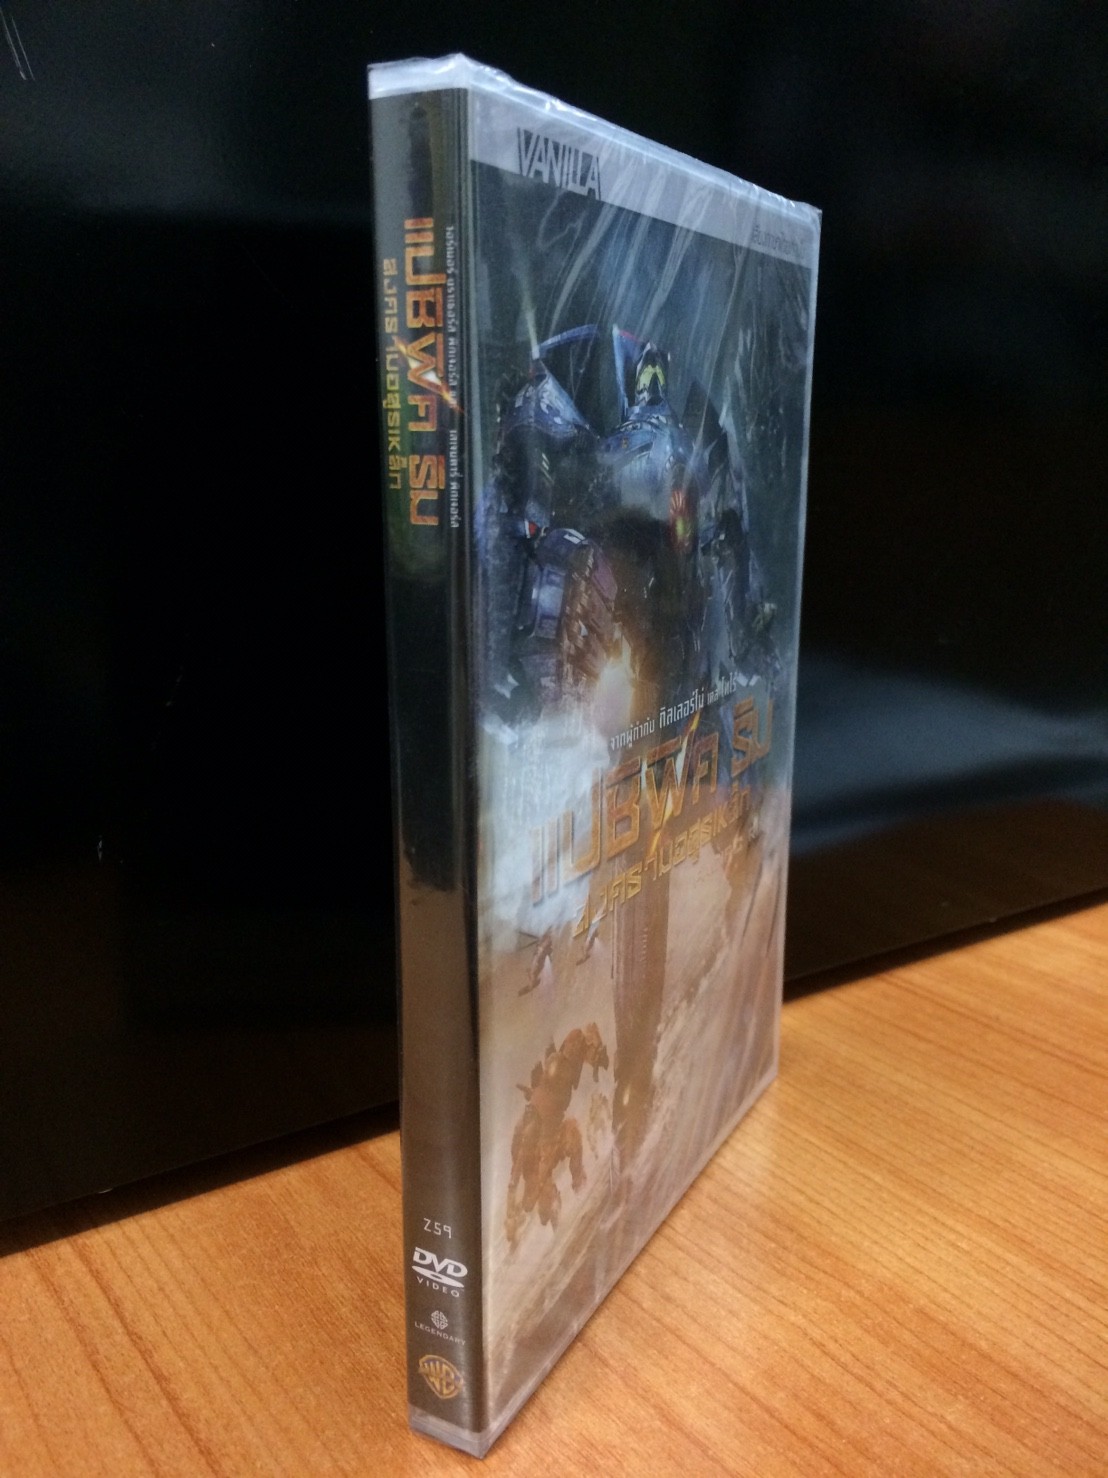 DVDหนัง แปซิฟิค ริม สงครามอสูรเหล็ก PACIFIC RIM (DVDTHAI89259-แปซิฟิคริม) พากย์ไทย เท่านั้น หนัง หนังหุ่นยนต์ ดีวีดี แผ่นหนัง ดูหนัง หนังดี แบบกล่อง มาสเตอร์แท้  STARMART